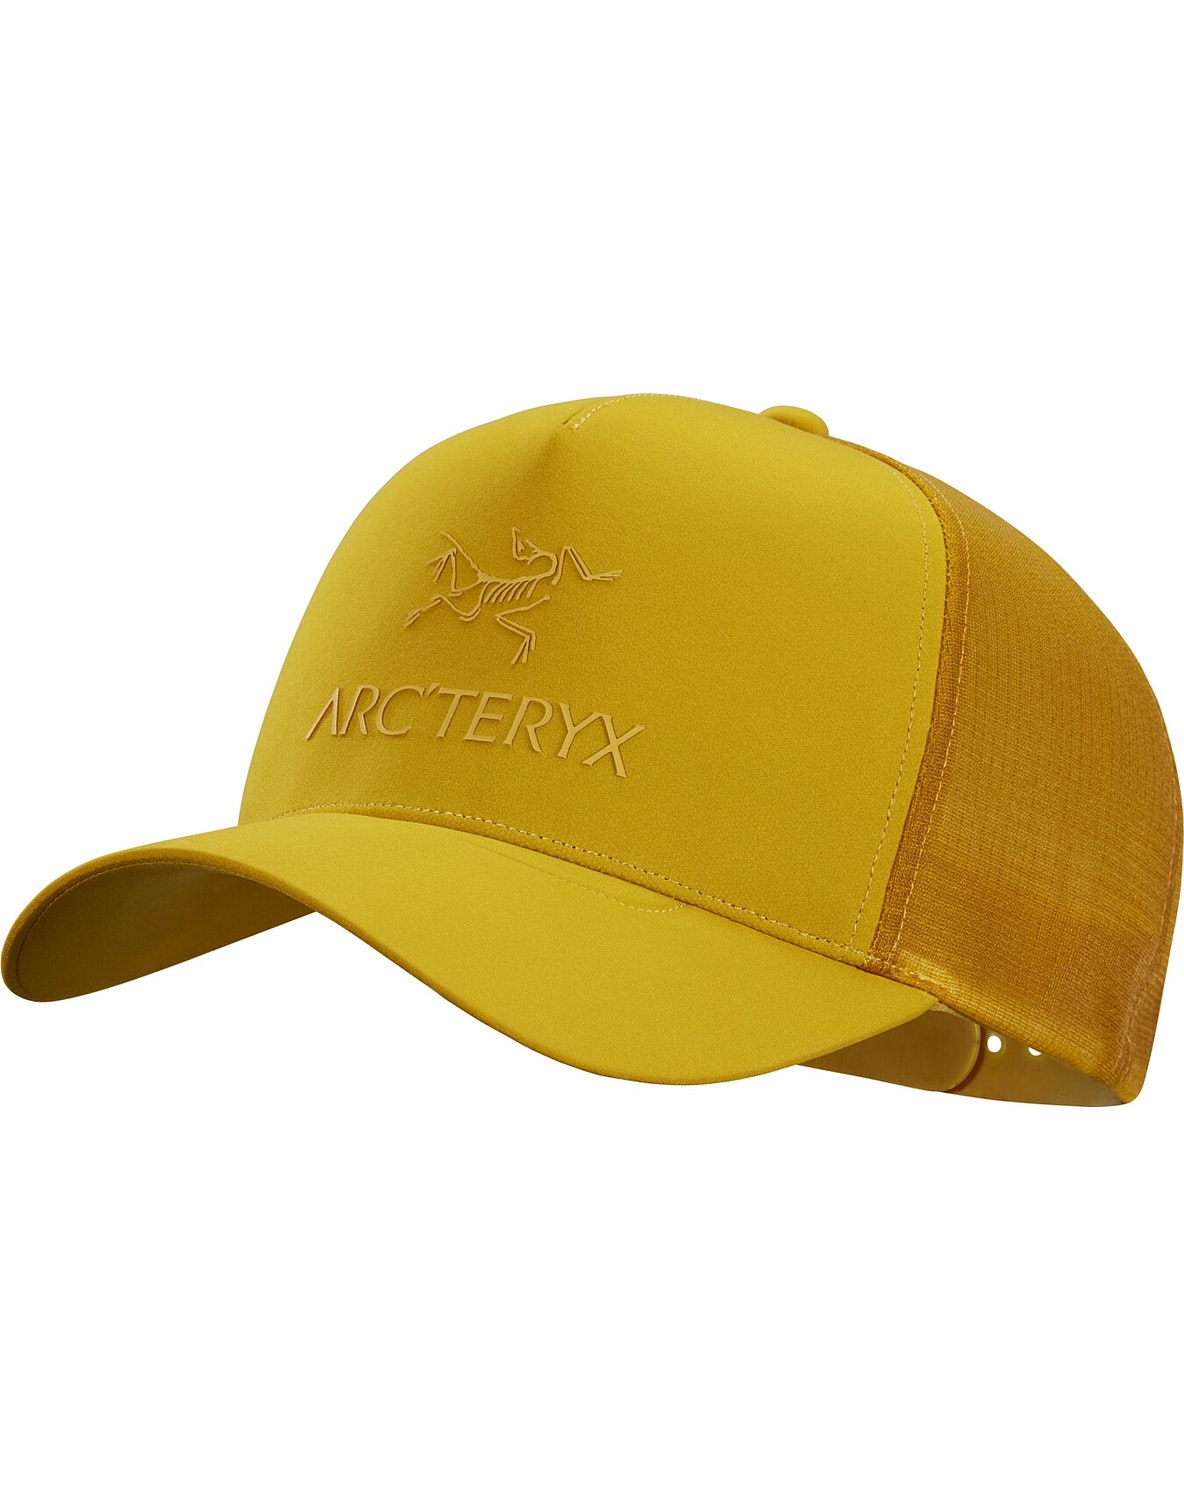 Hats Arc'teryx Logo Uomo Gialle - IT-3546